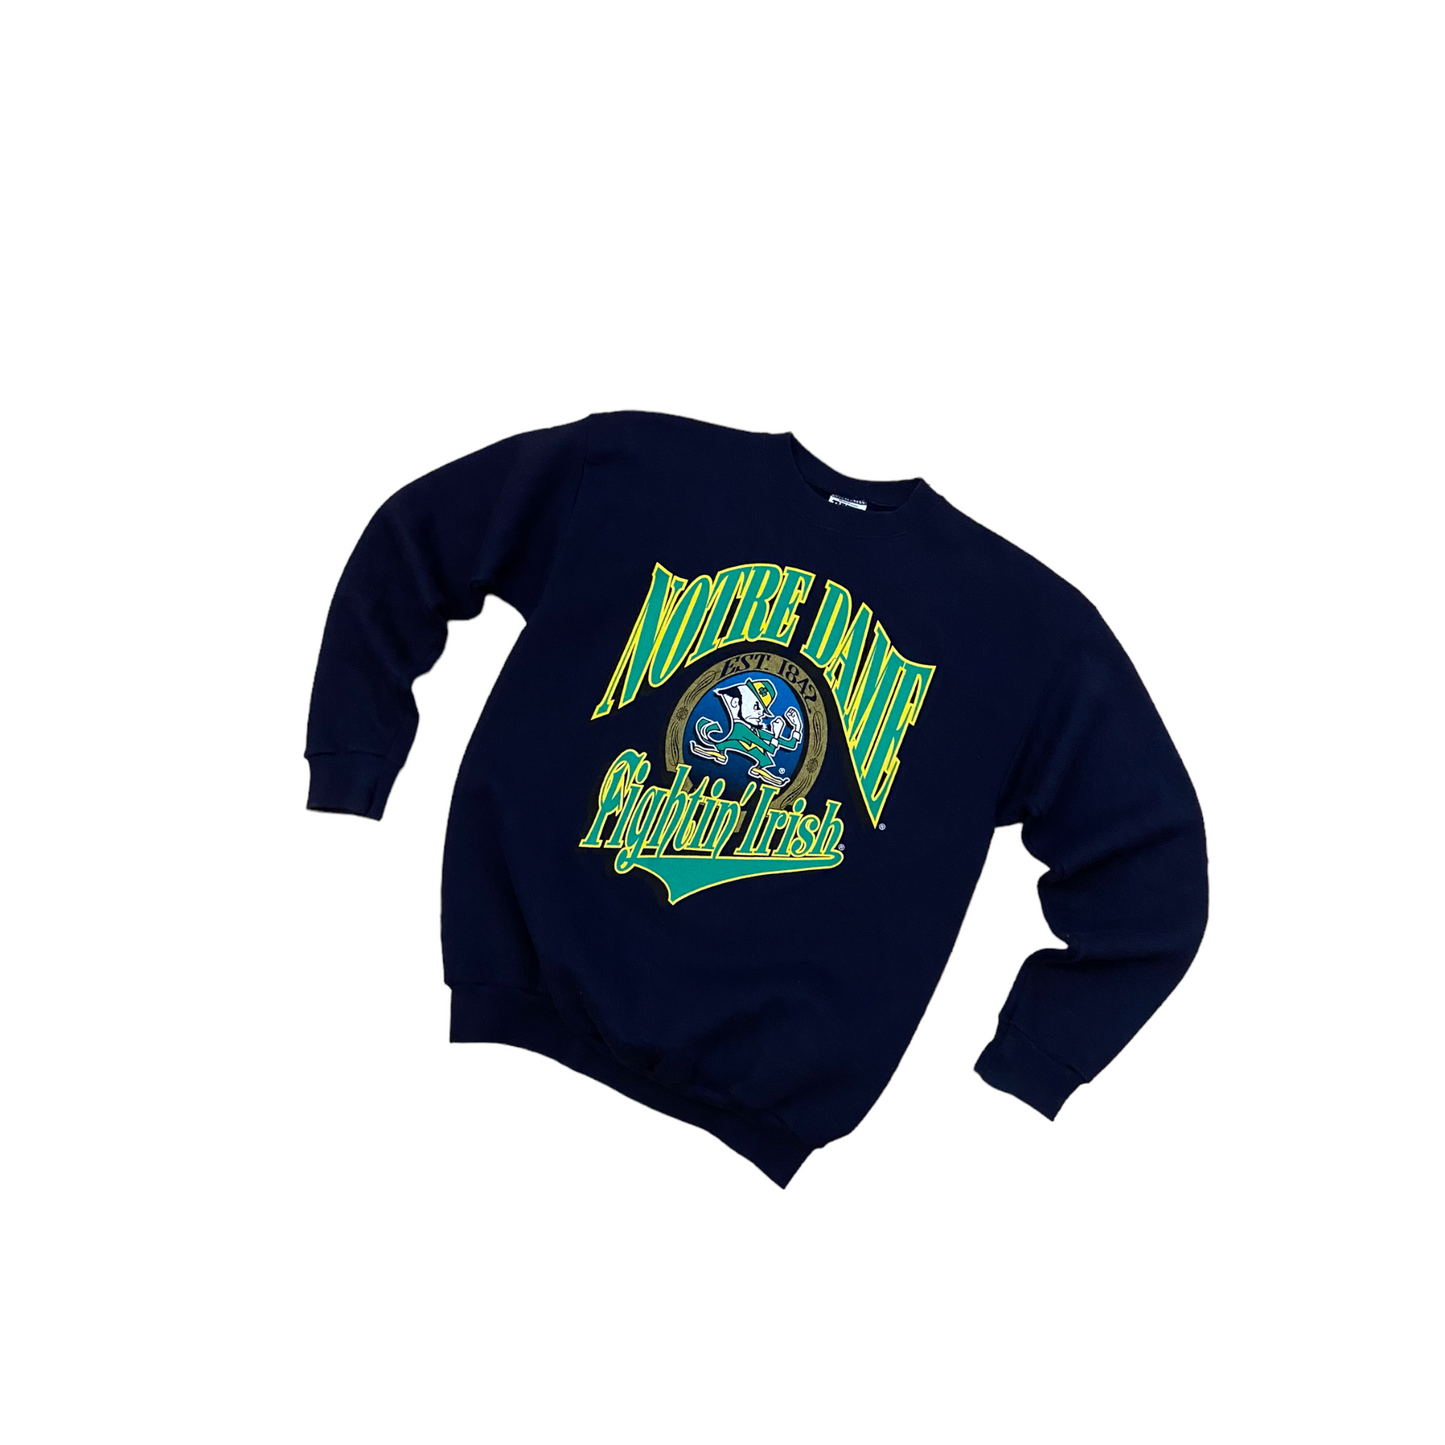 Notre Dame 90s sweatshirt L/M